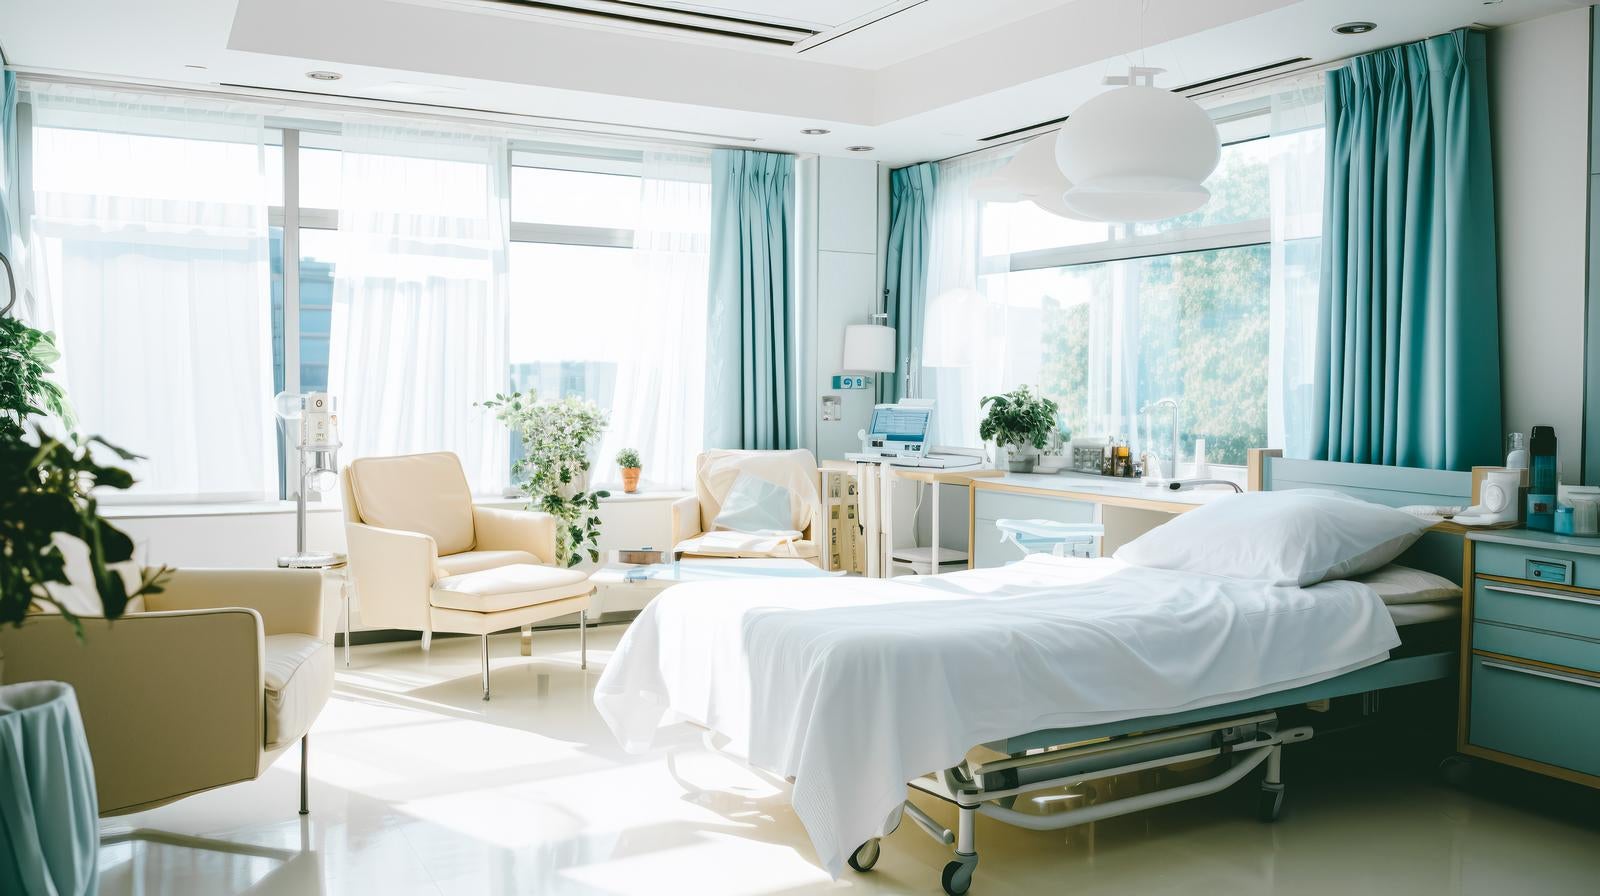 「自然光の入る病院の病室」の写真